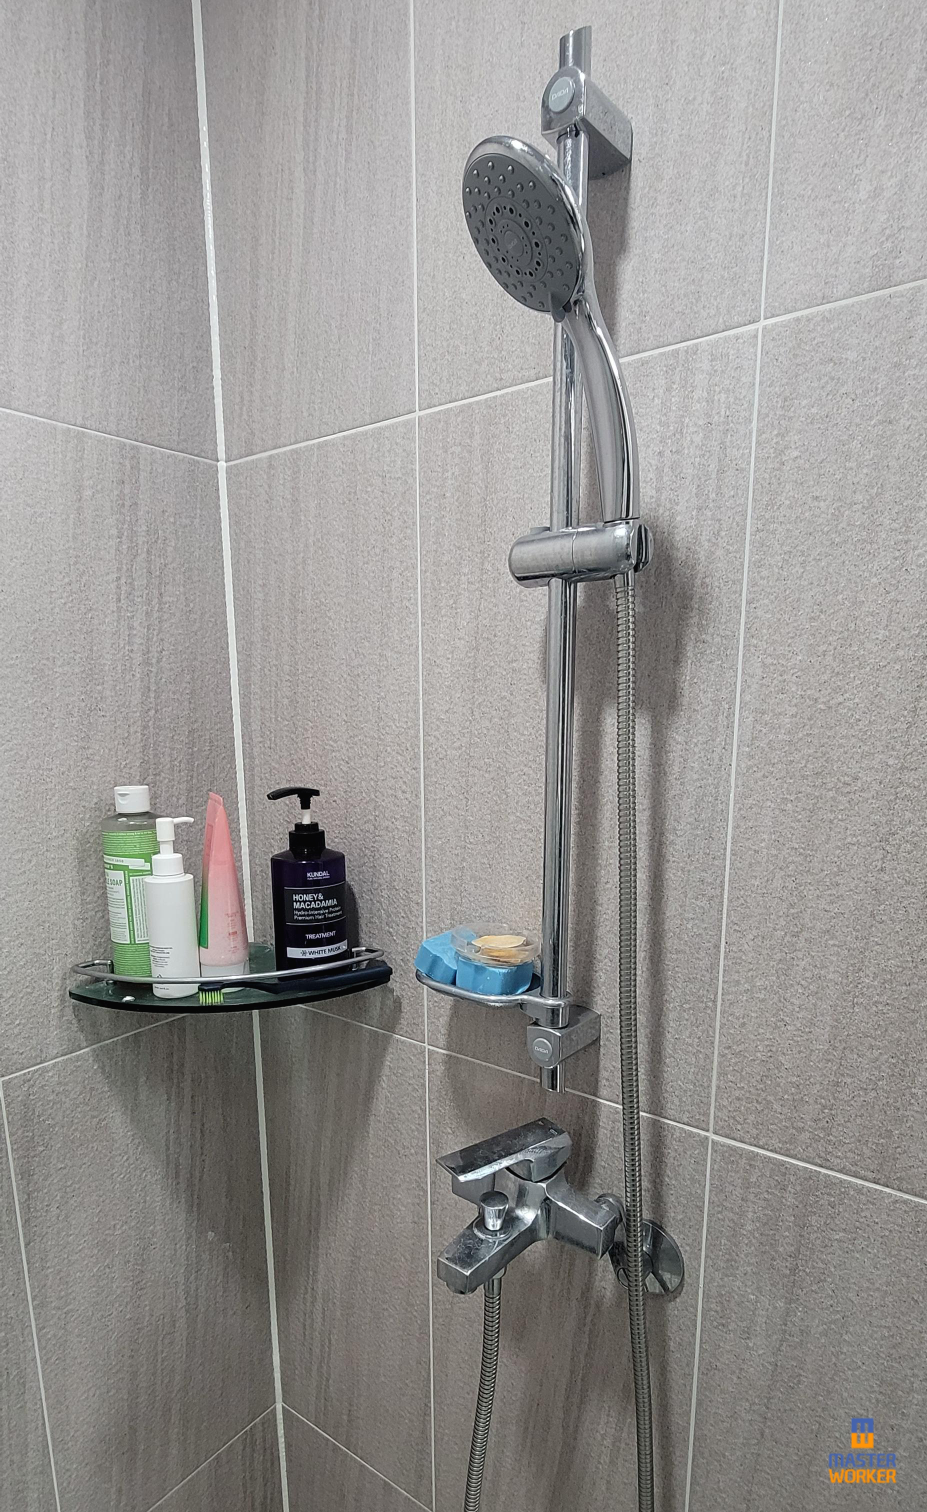 안방 화장실의 샤워 수전의 호스가 행거에 걸려있는 모습